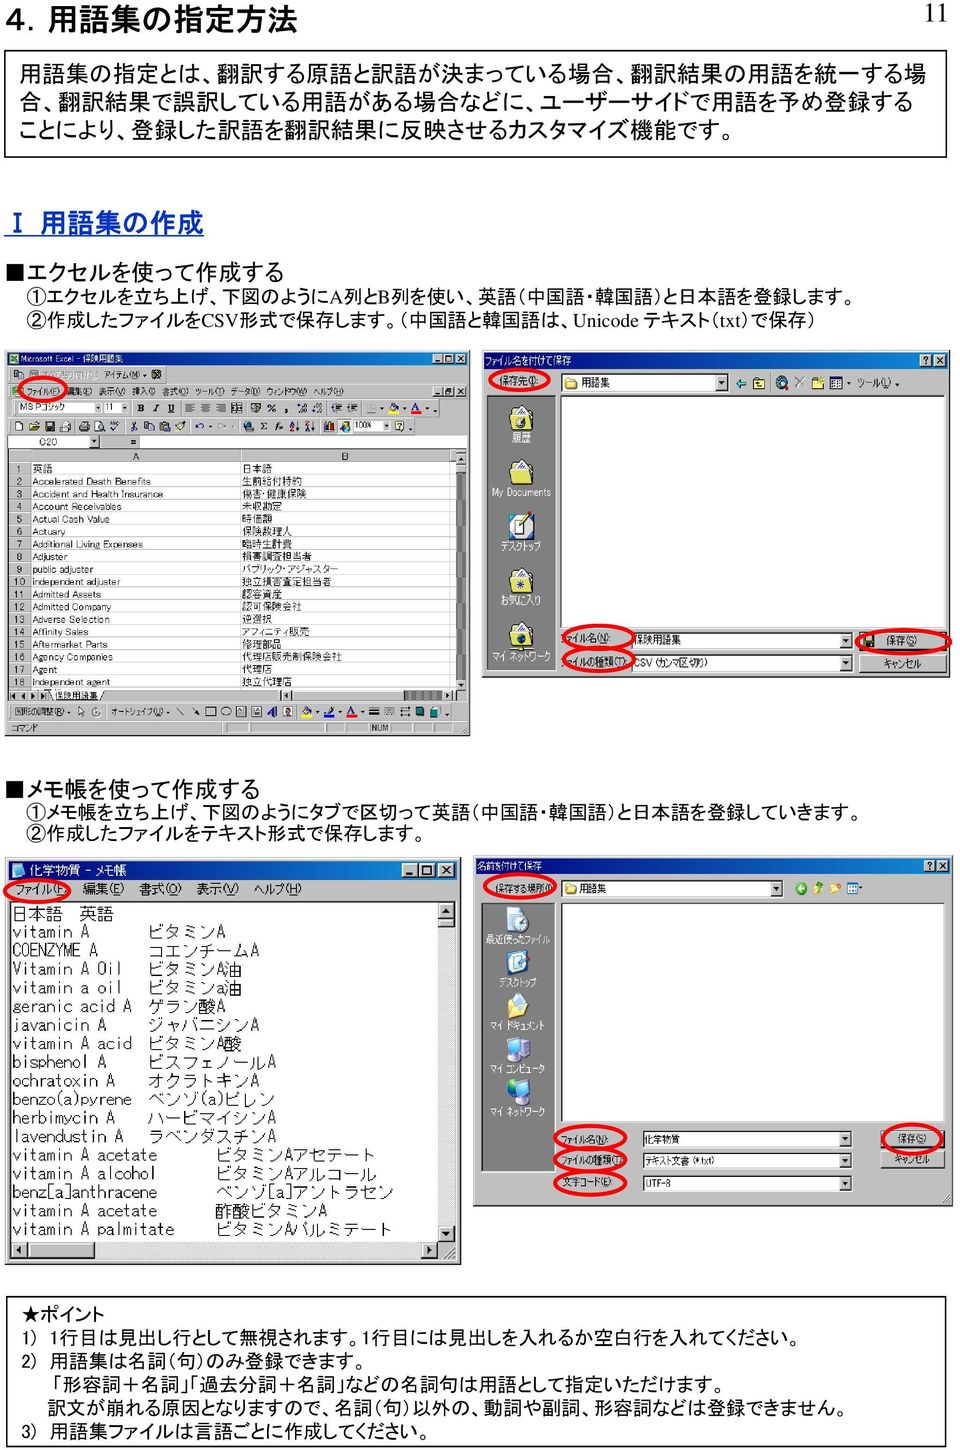 存 ) メモ 帳 を 使 って 作 成 する 1メモ 帳 を 立 ち 上 げ 下 図 のようにタブで 区 切 って 英 語 ( 中 国 語 韓 国 語 )と 日 本 語 を 登 録 していきます 作 成 したファイルをテキスト 形 式 で 保 存 します 1) 1 行 目 は 見 出 し 行 として 無 視 されます 1 行 目 には 見 出 しを 入 れるか 空 白 行 を 入